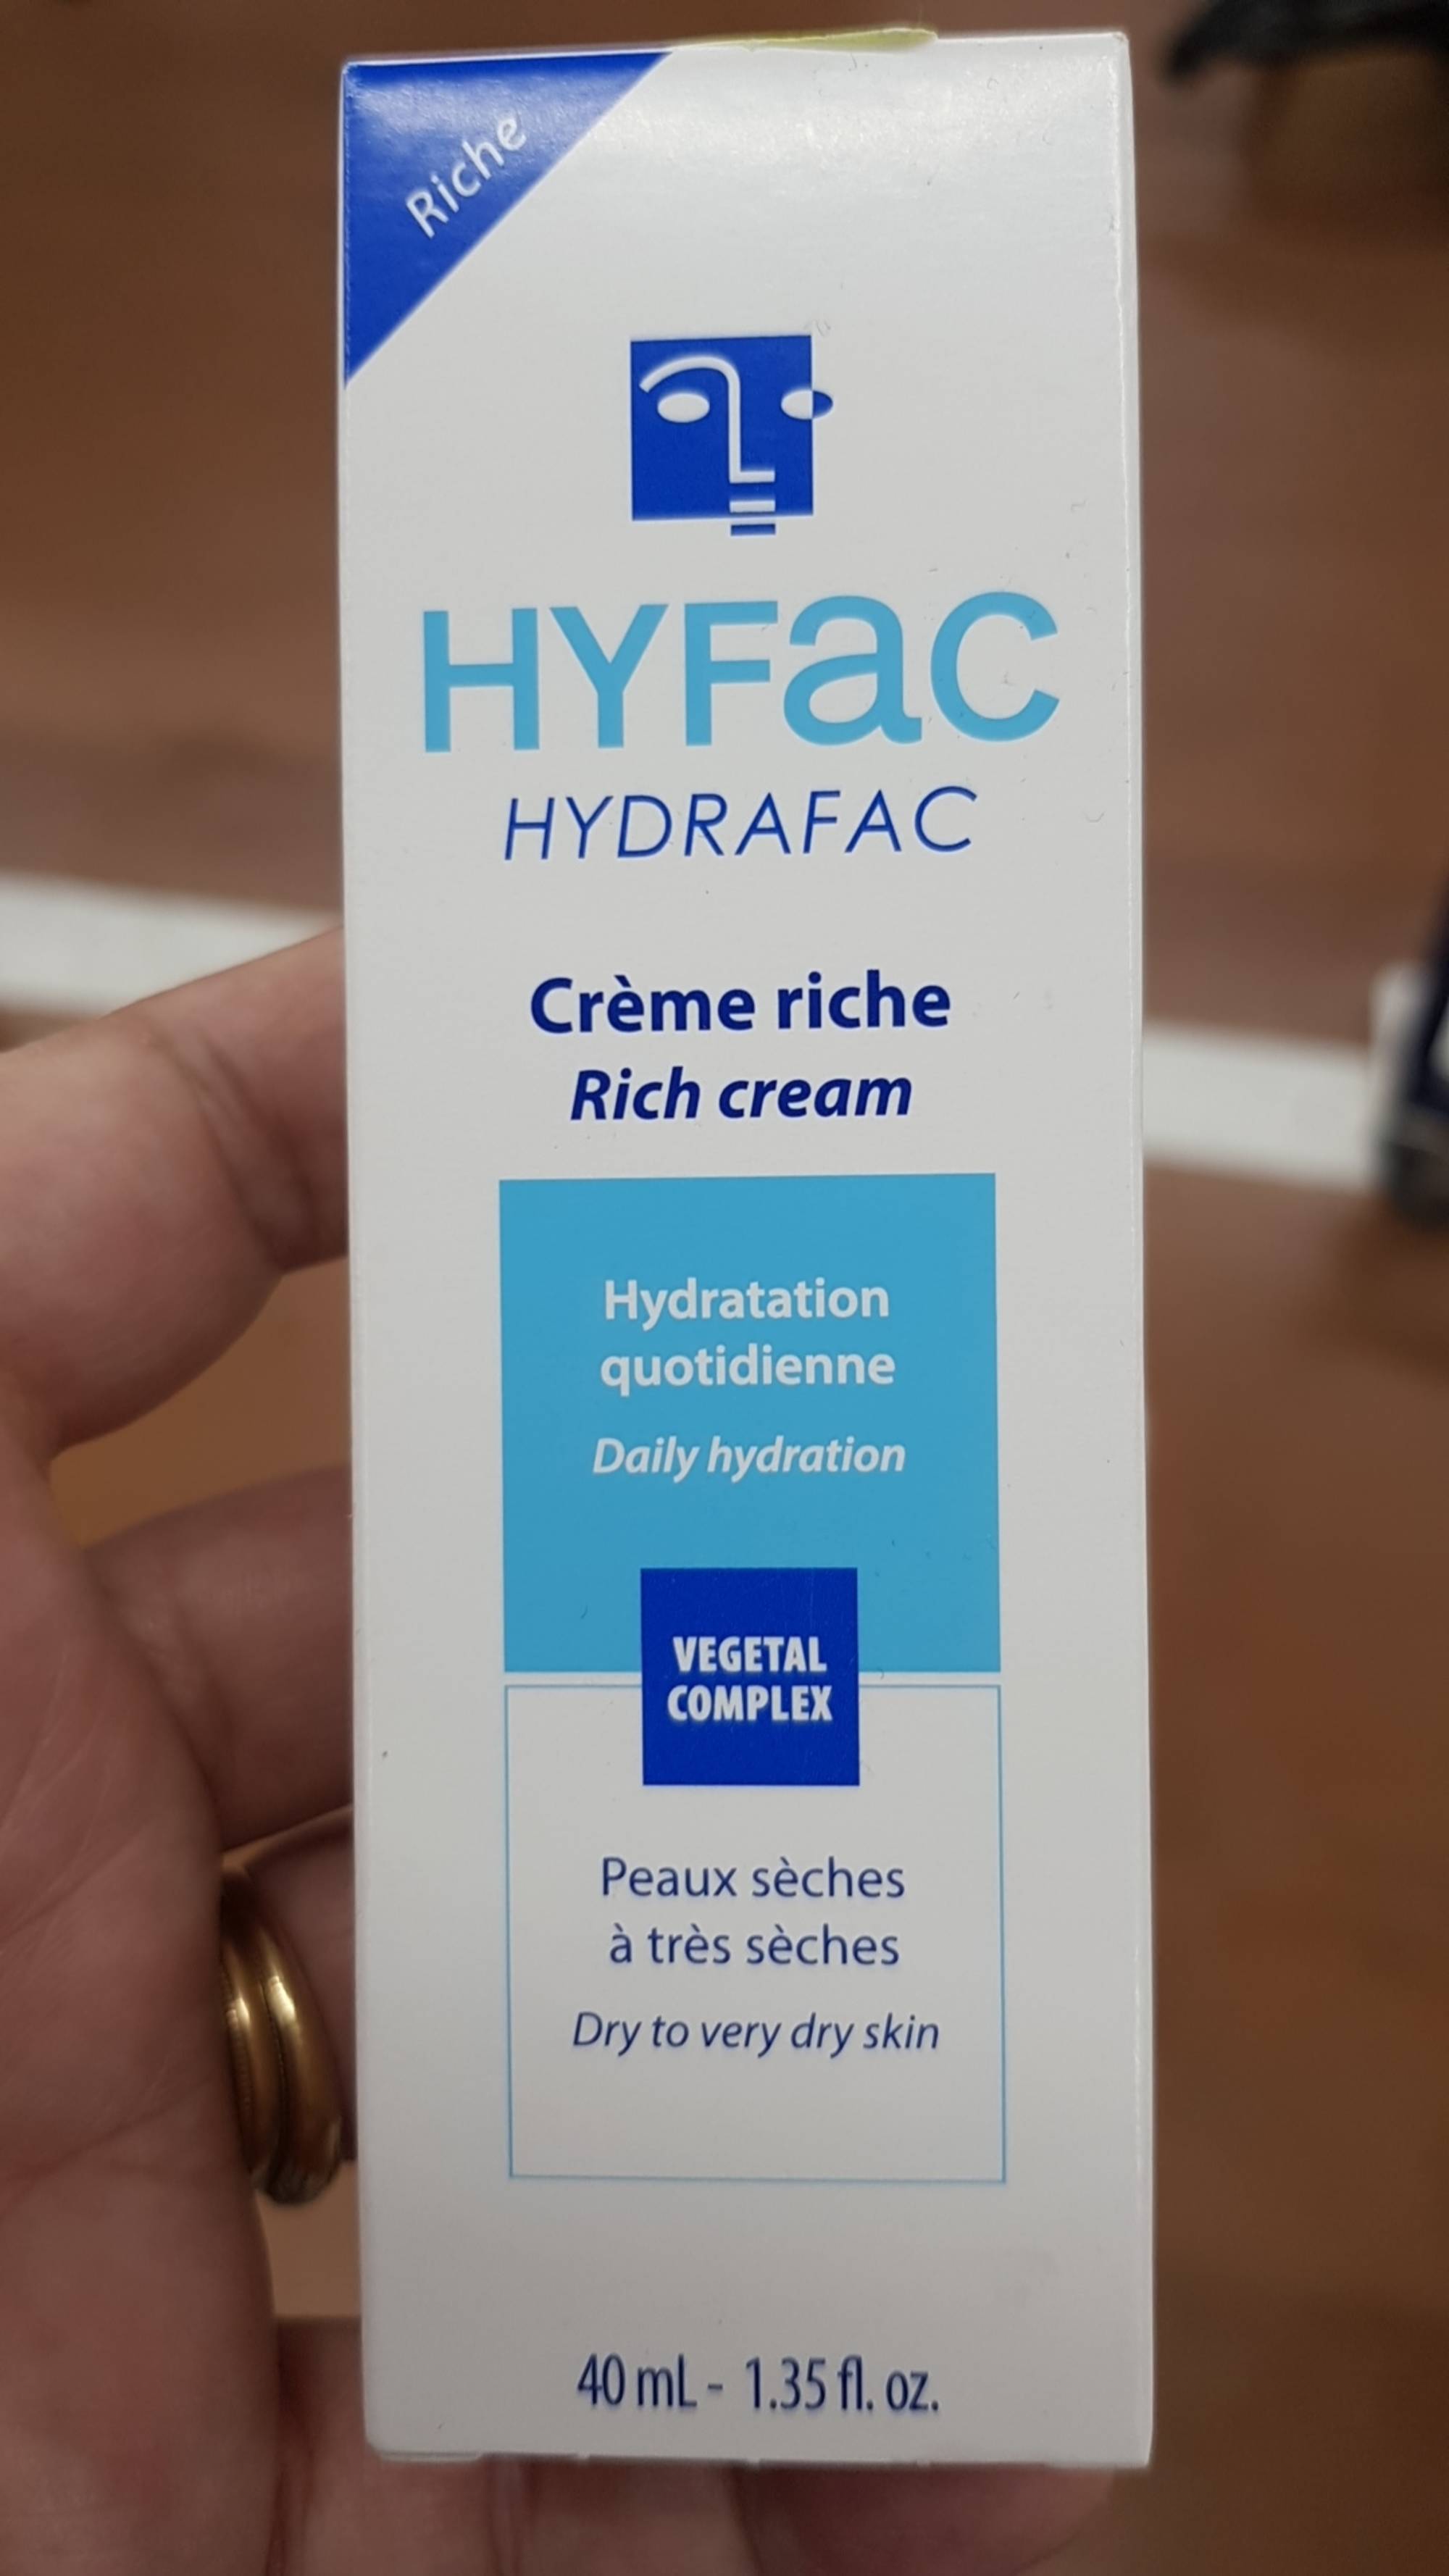 HYFAC - Hydrafac - Crème riche hydratation quotidienne 